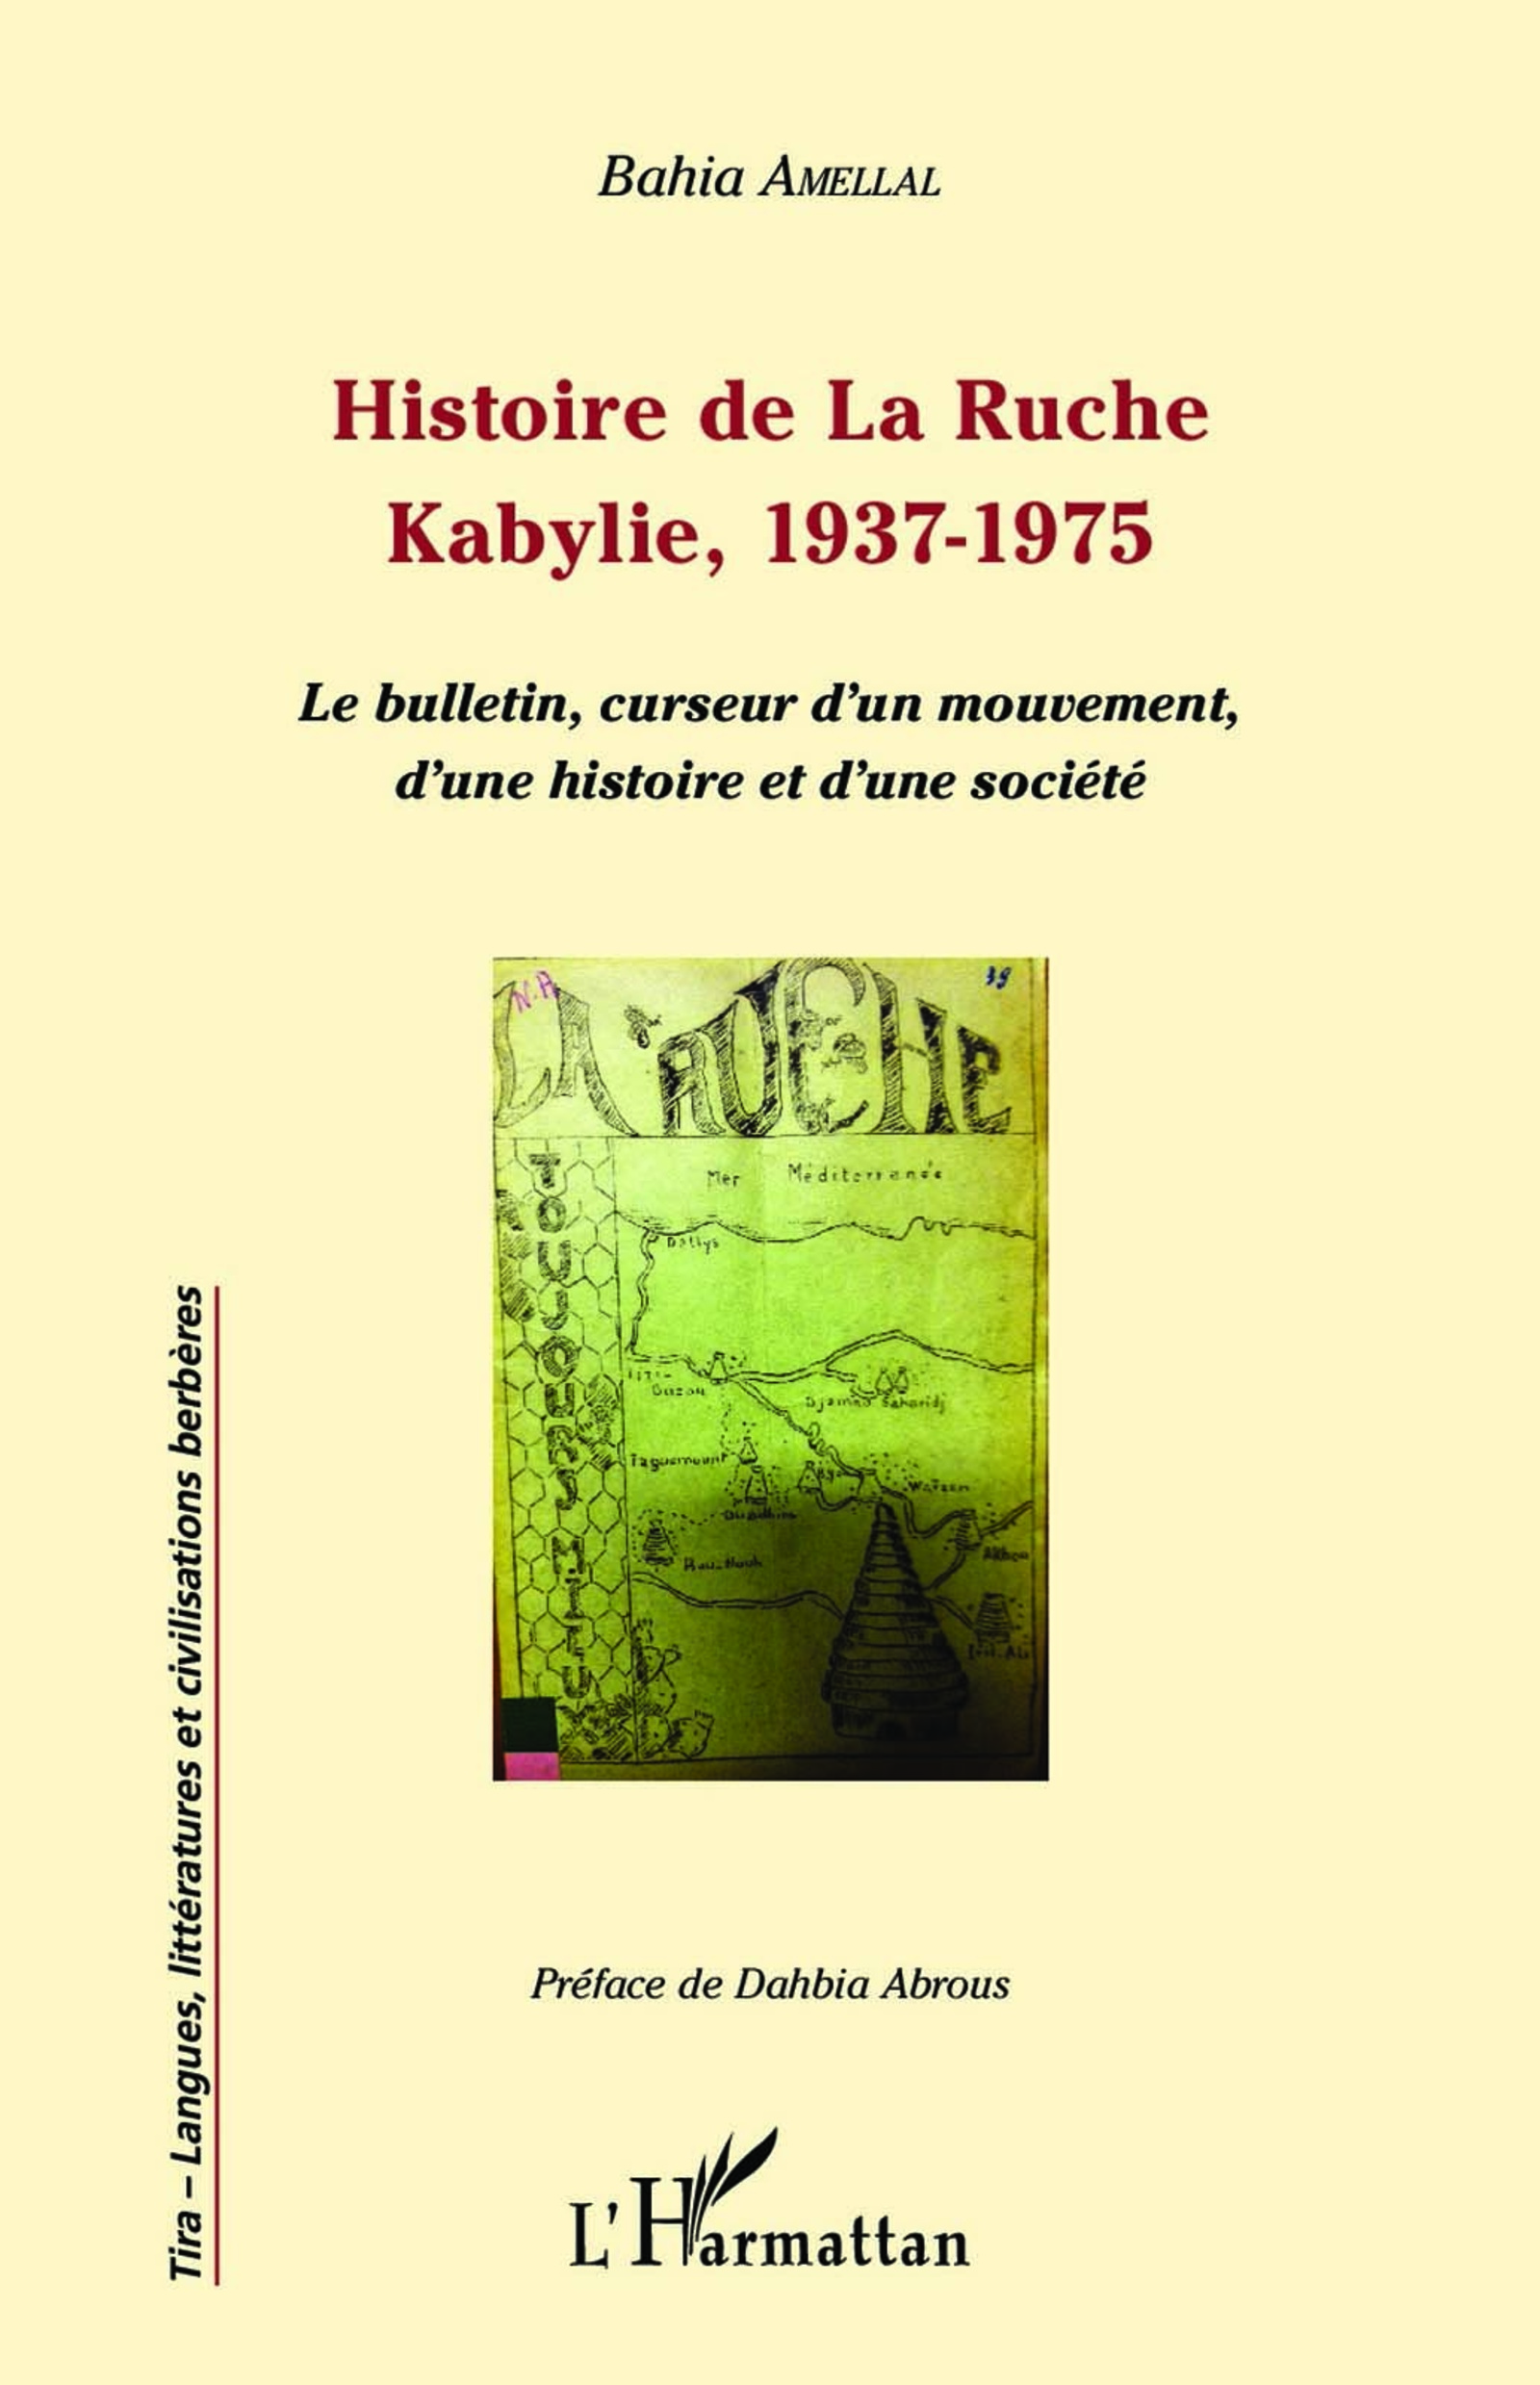 Histoire de La Ruche, Kabylie, 1937-1975 : Le bulletin, curseur d’un mouvement